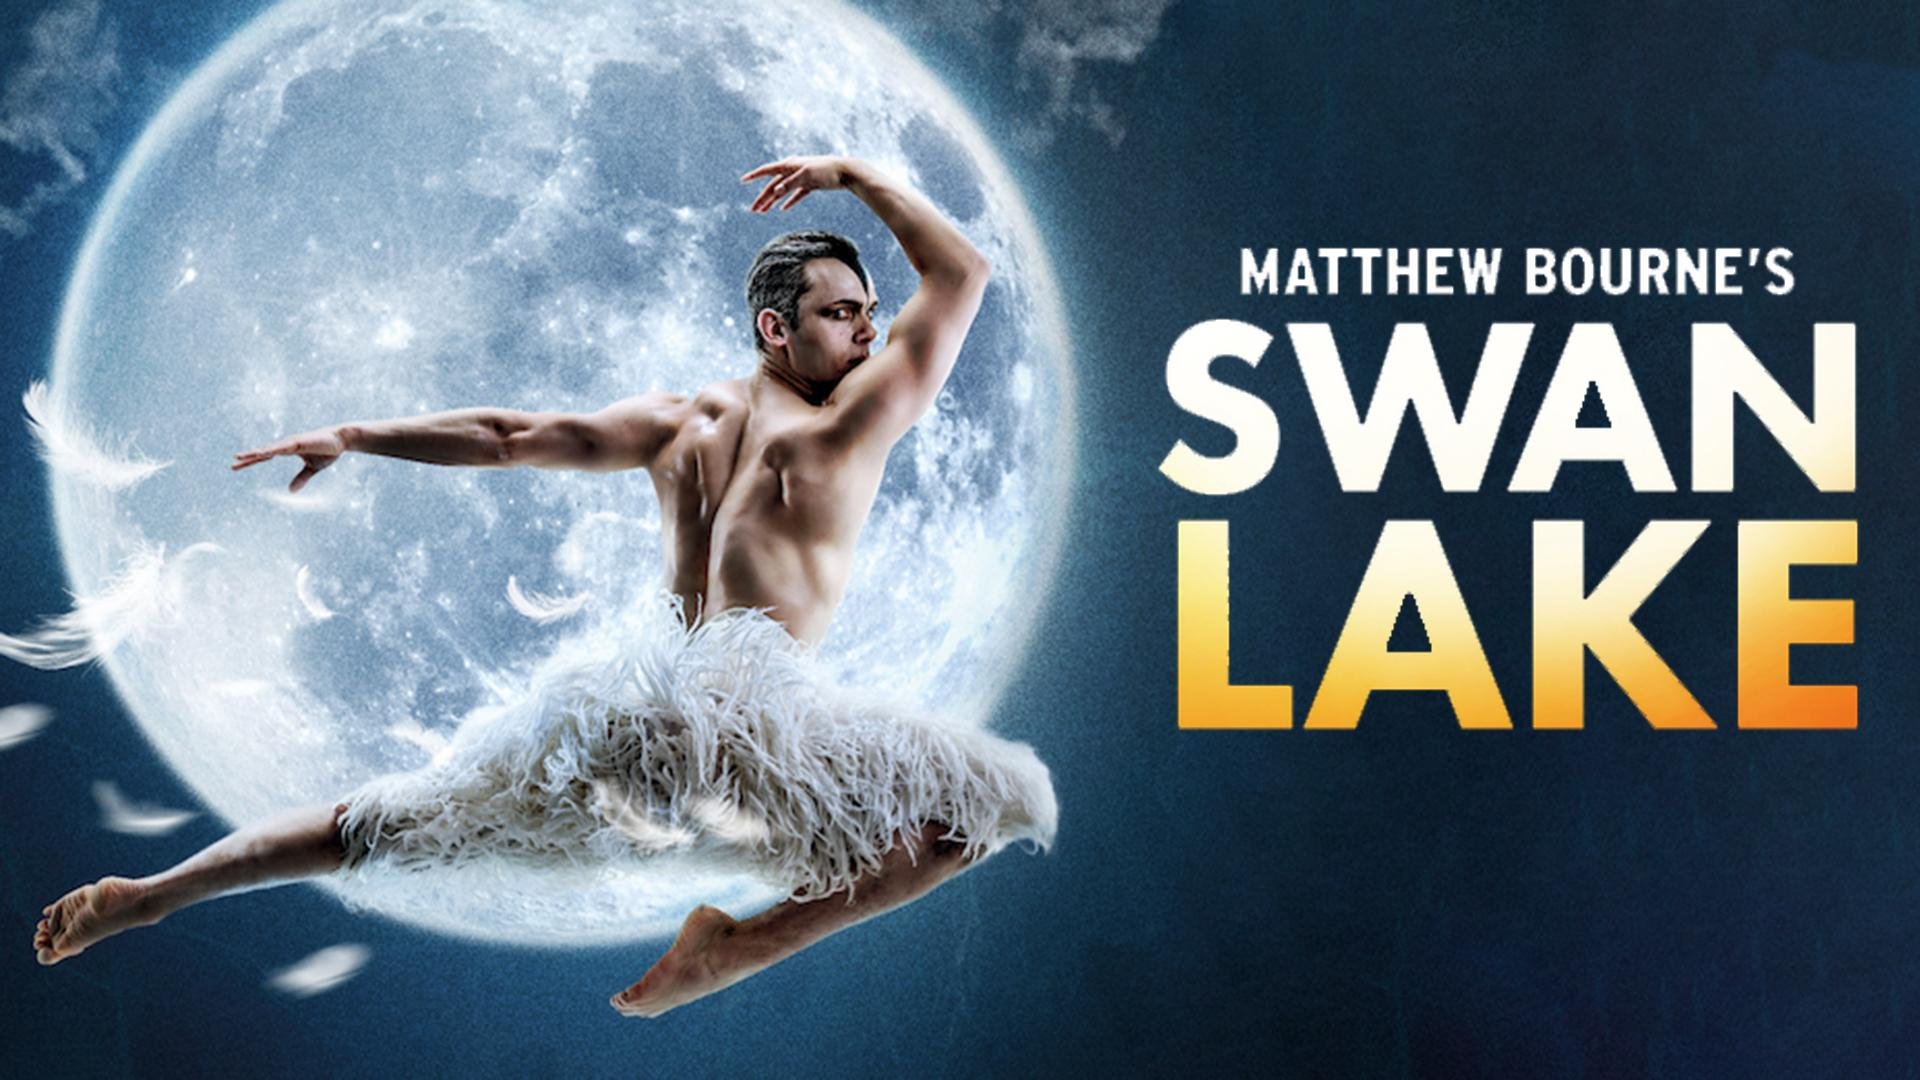 Watch Matthew Bourne's Swan Lake 2019 Online Stream Full Episodes